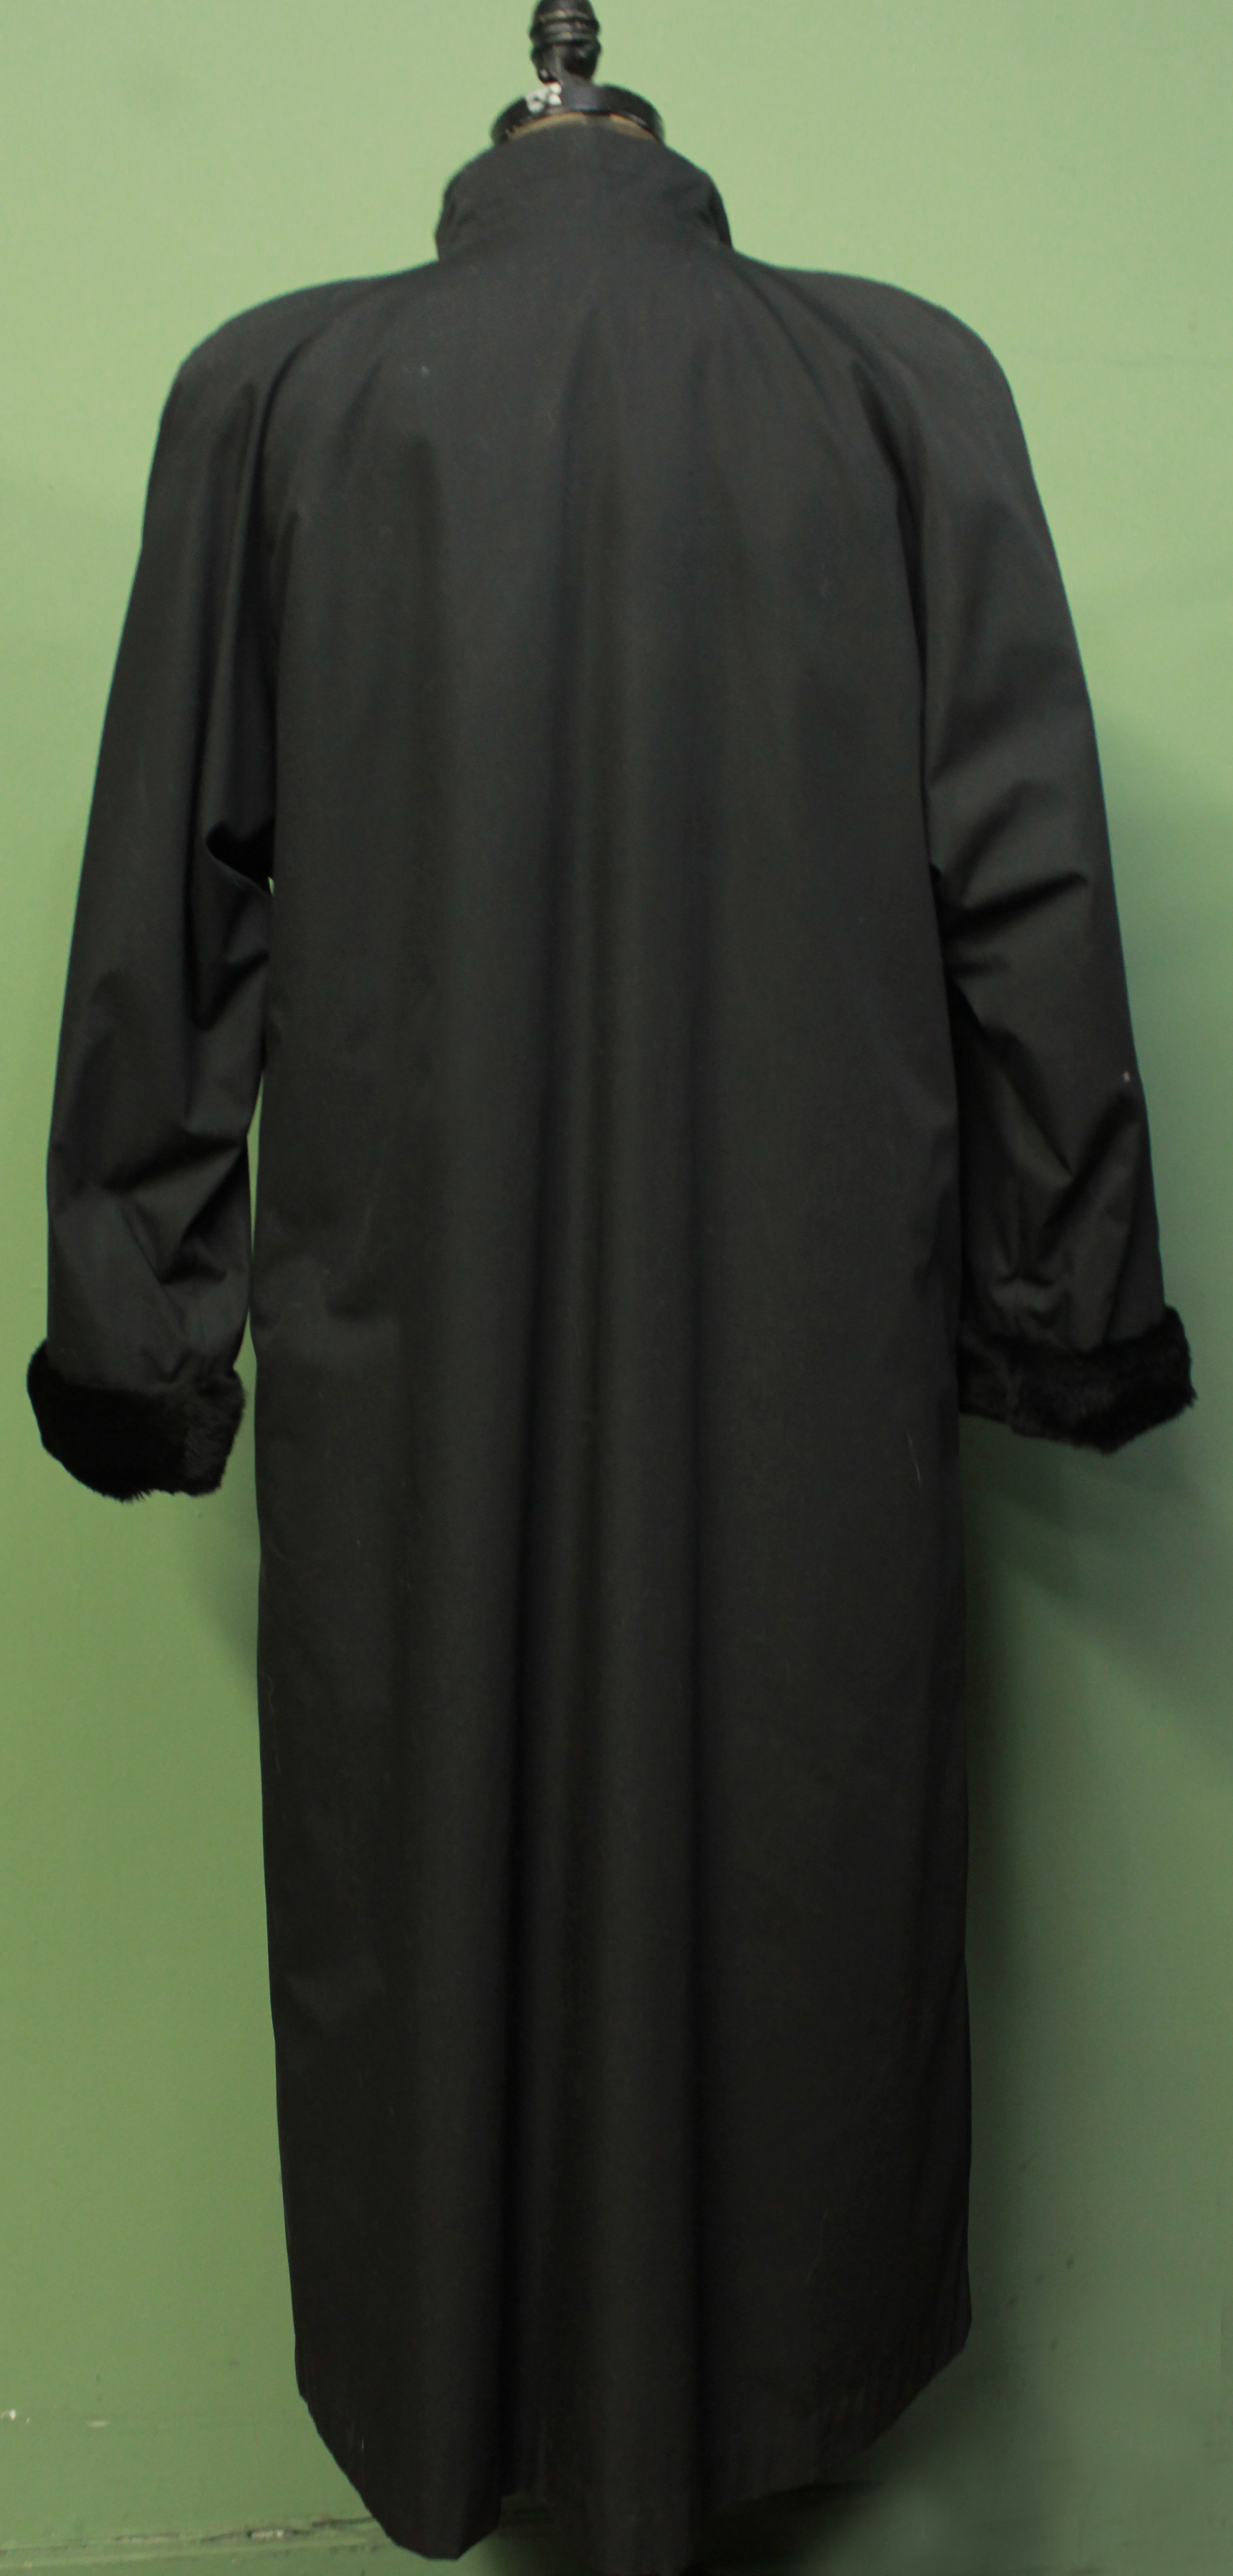 Black Cloth Coat Black Mink Fur Collar Cuffs Mink Lined Size 8-10 39700 ...